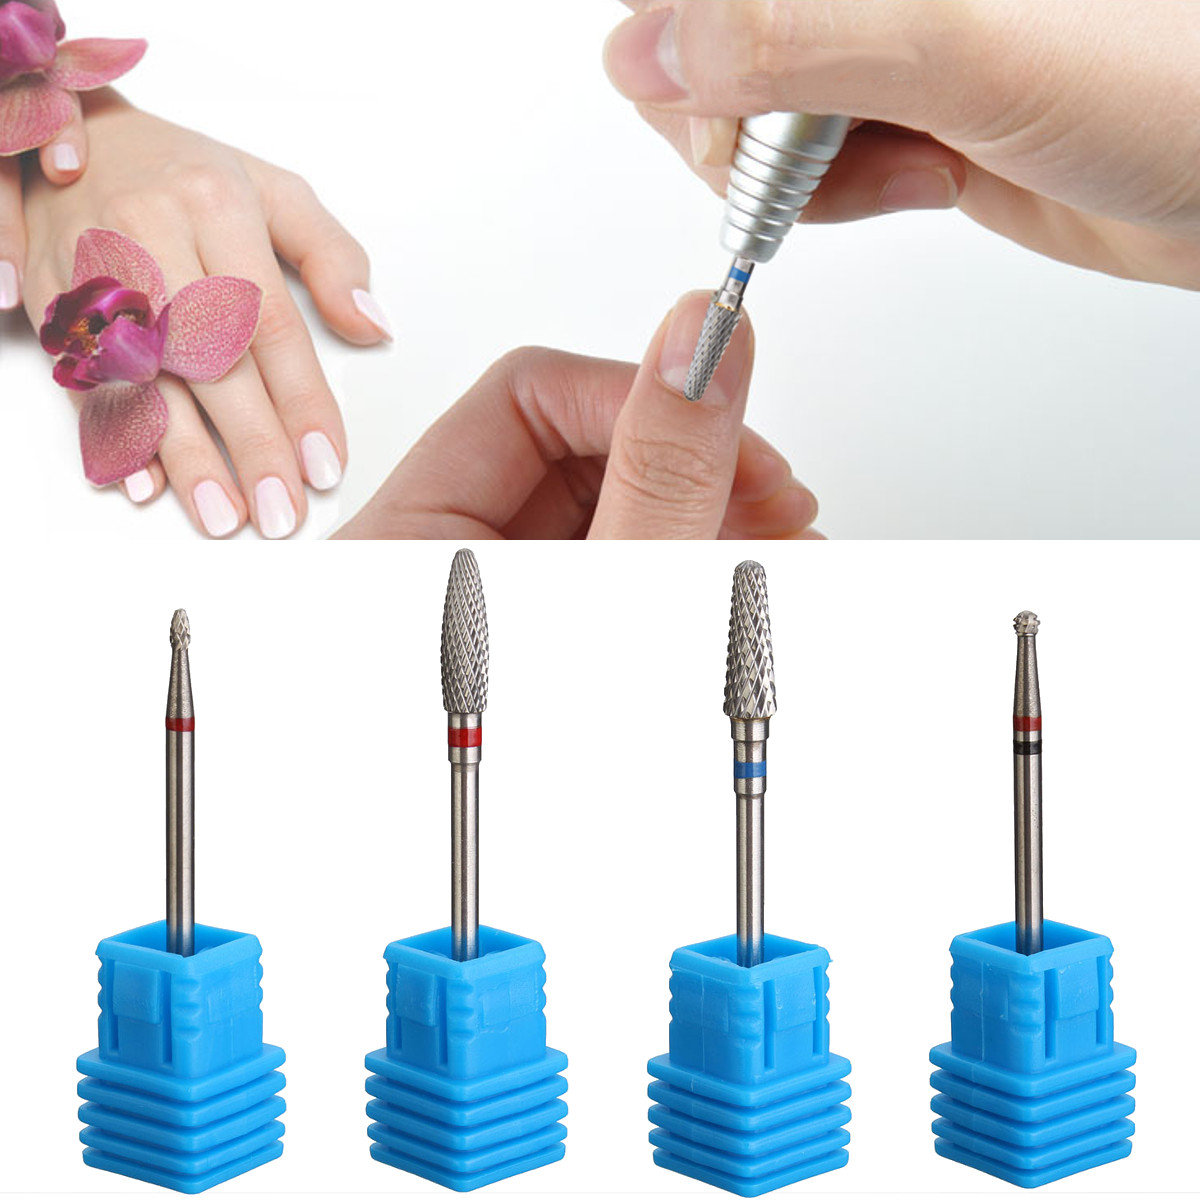 Carbide Nail Drill Bits File Cuticle Clean Burr For Nail Salon Manicure Pedicure